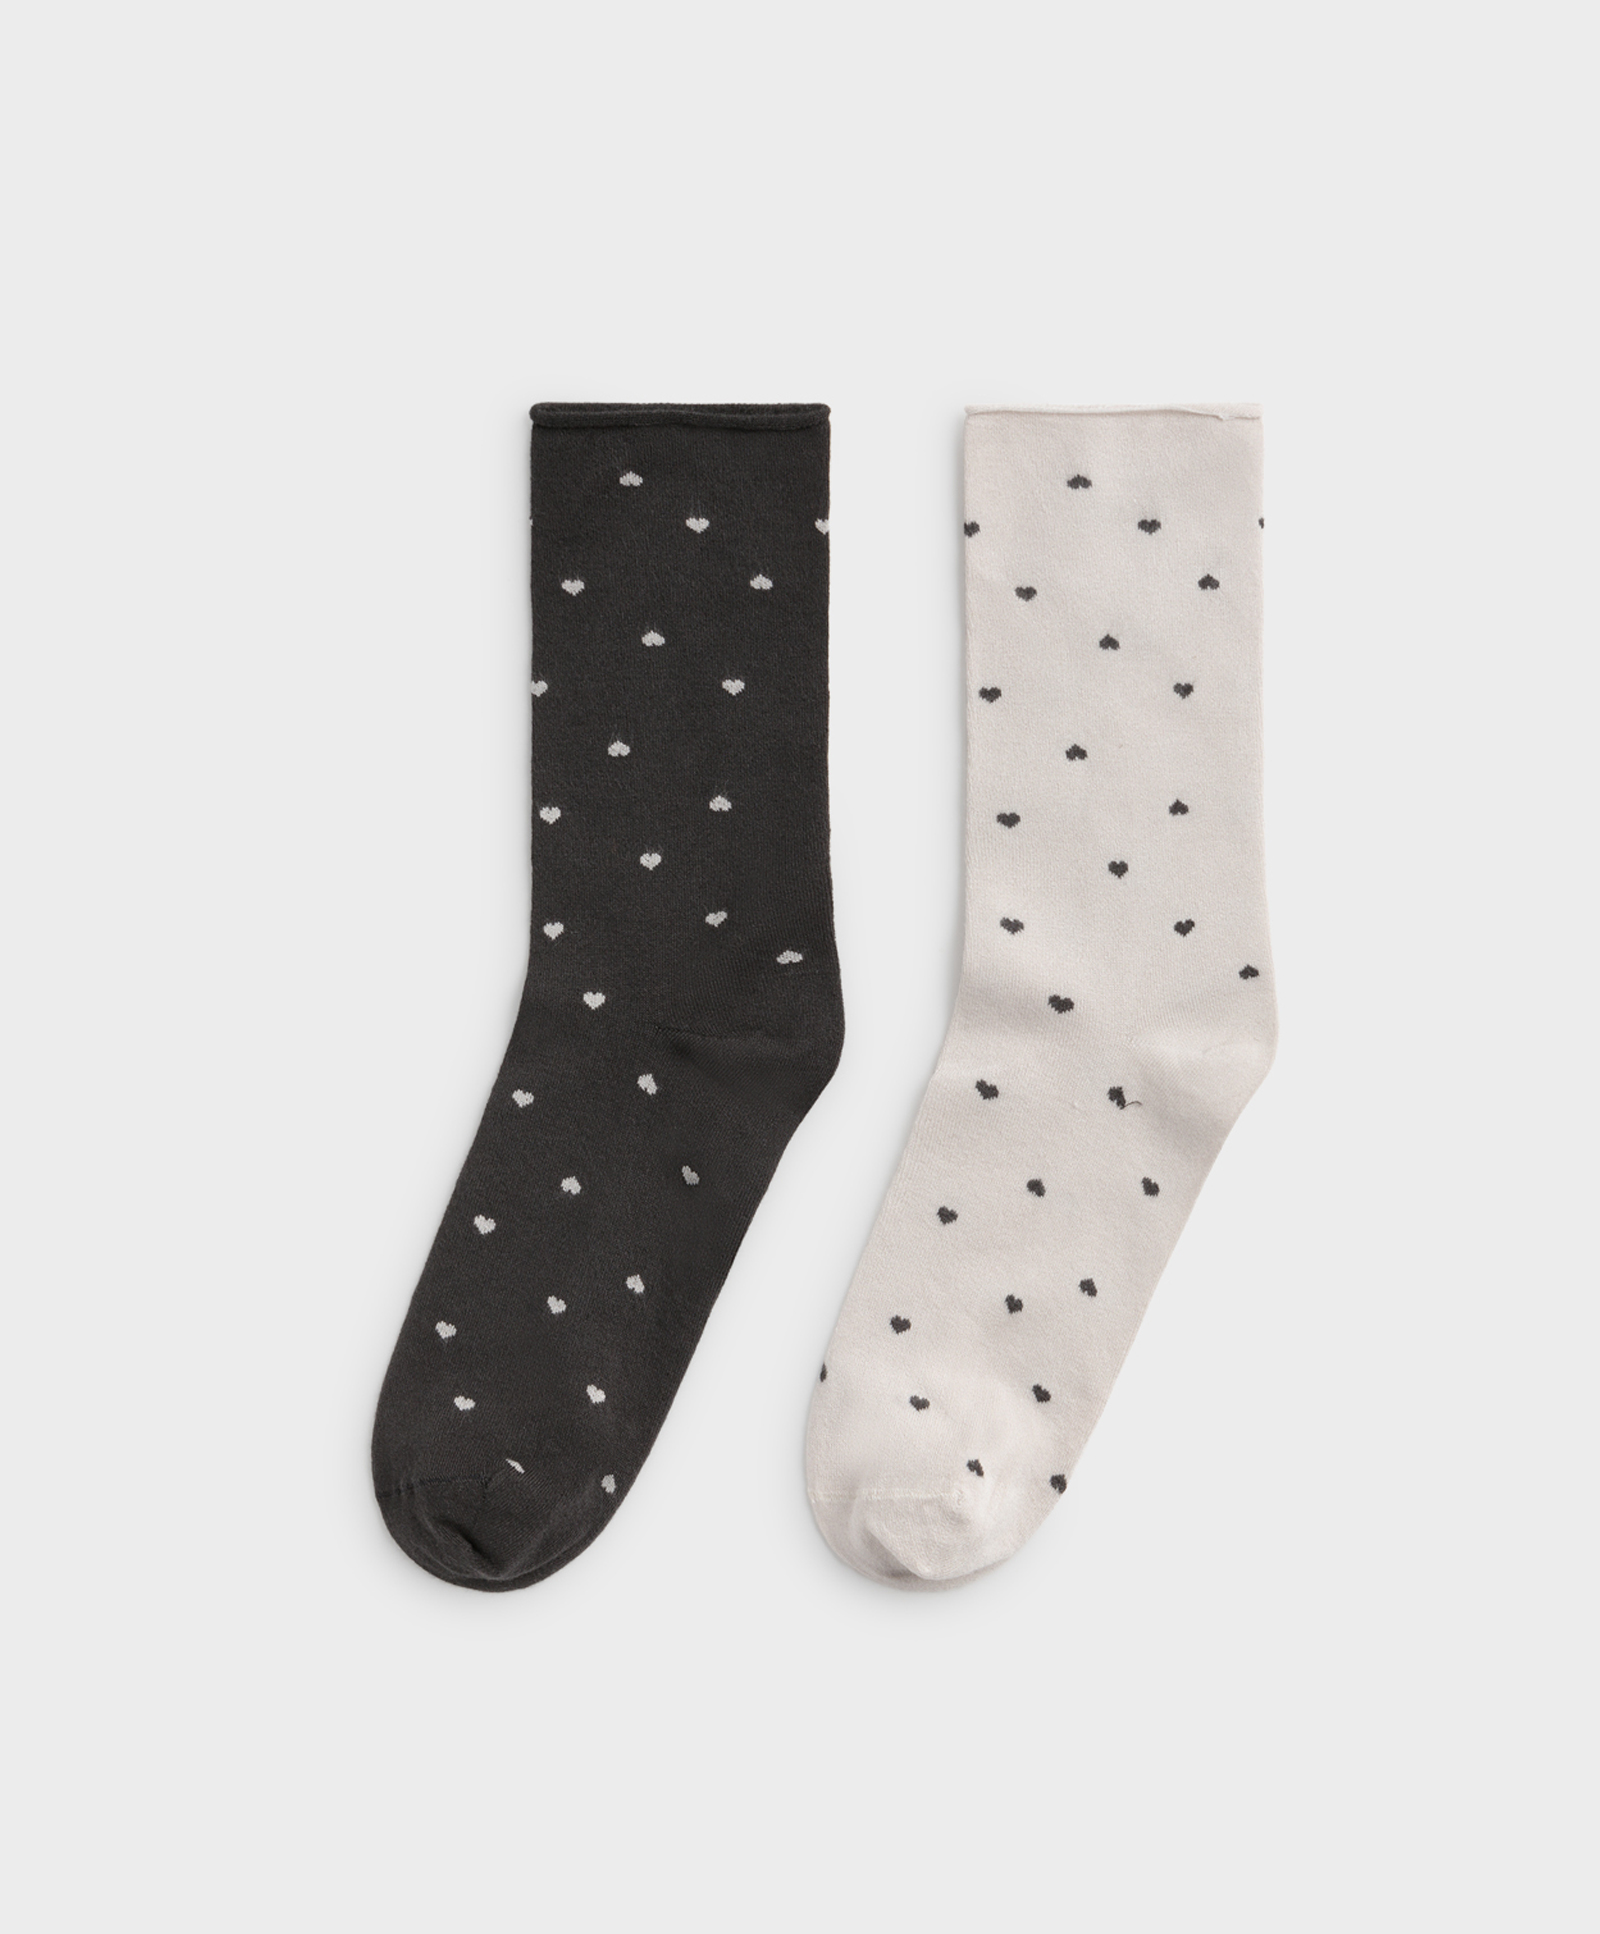 2 paar sokken van soft touch micromodal met fantasieprint